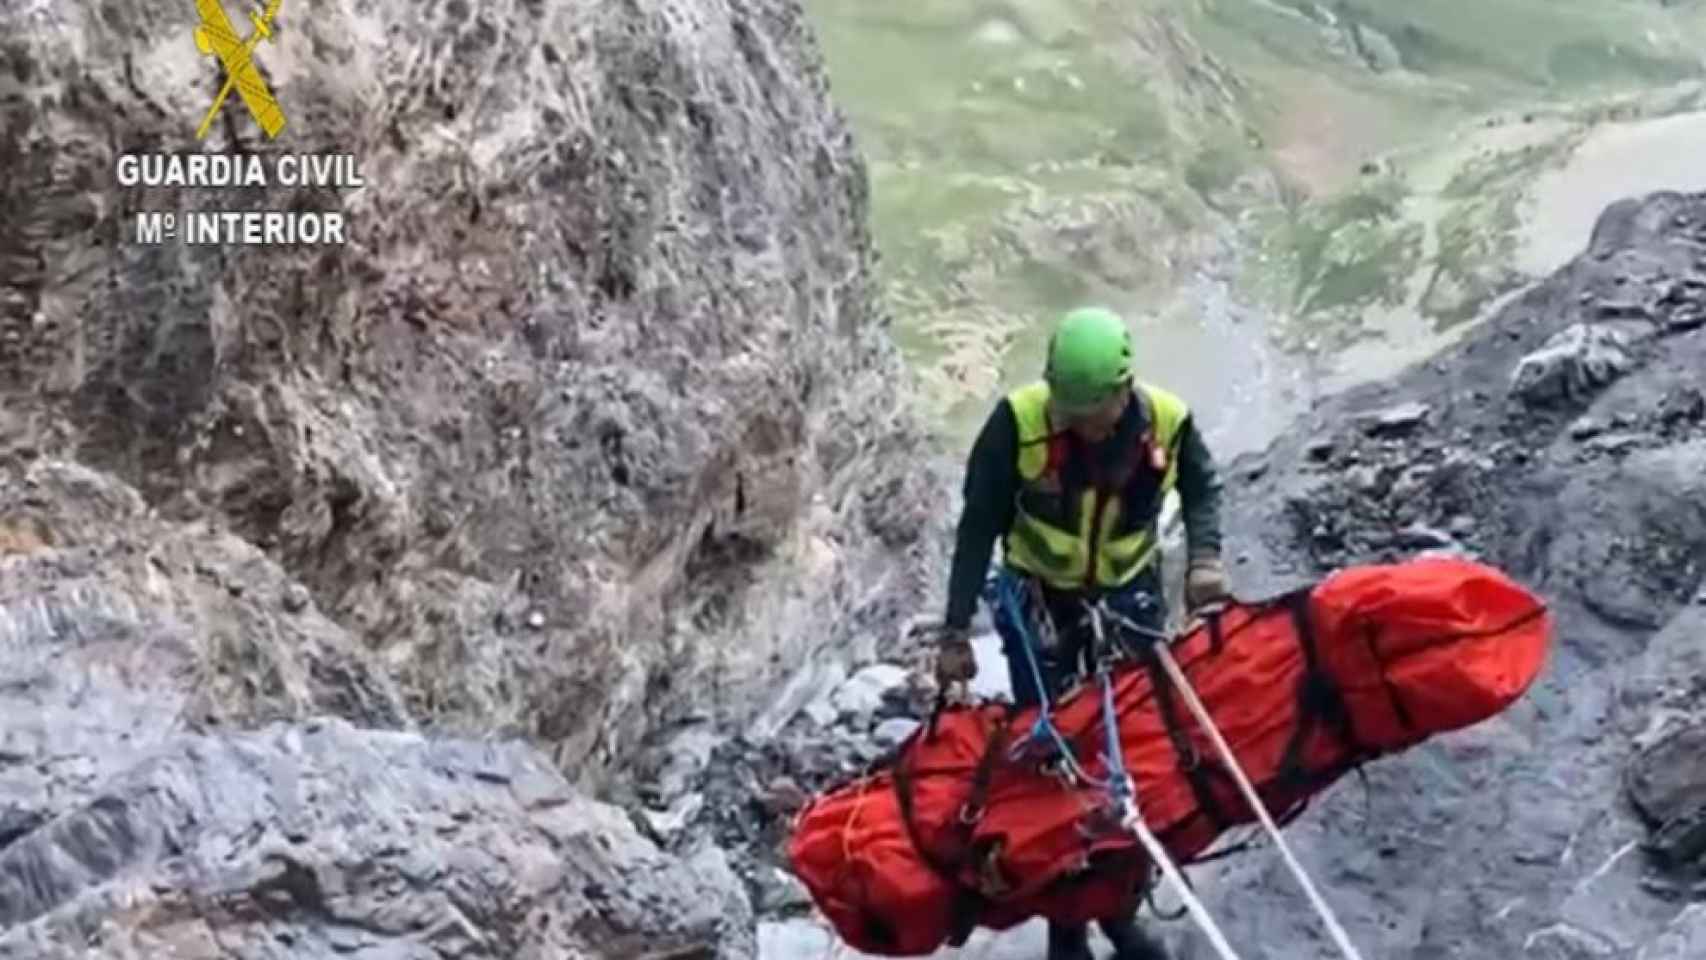 Rescate del montañero de Barcelona muerto en Huesca / GUARDIA CIVIL